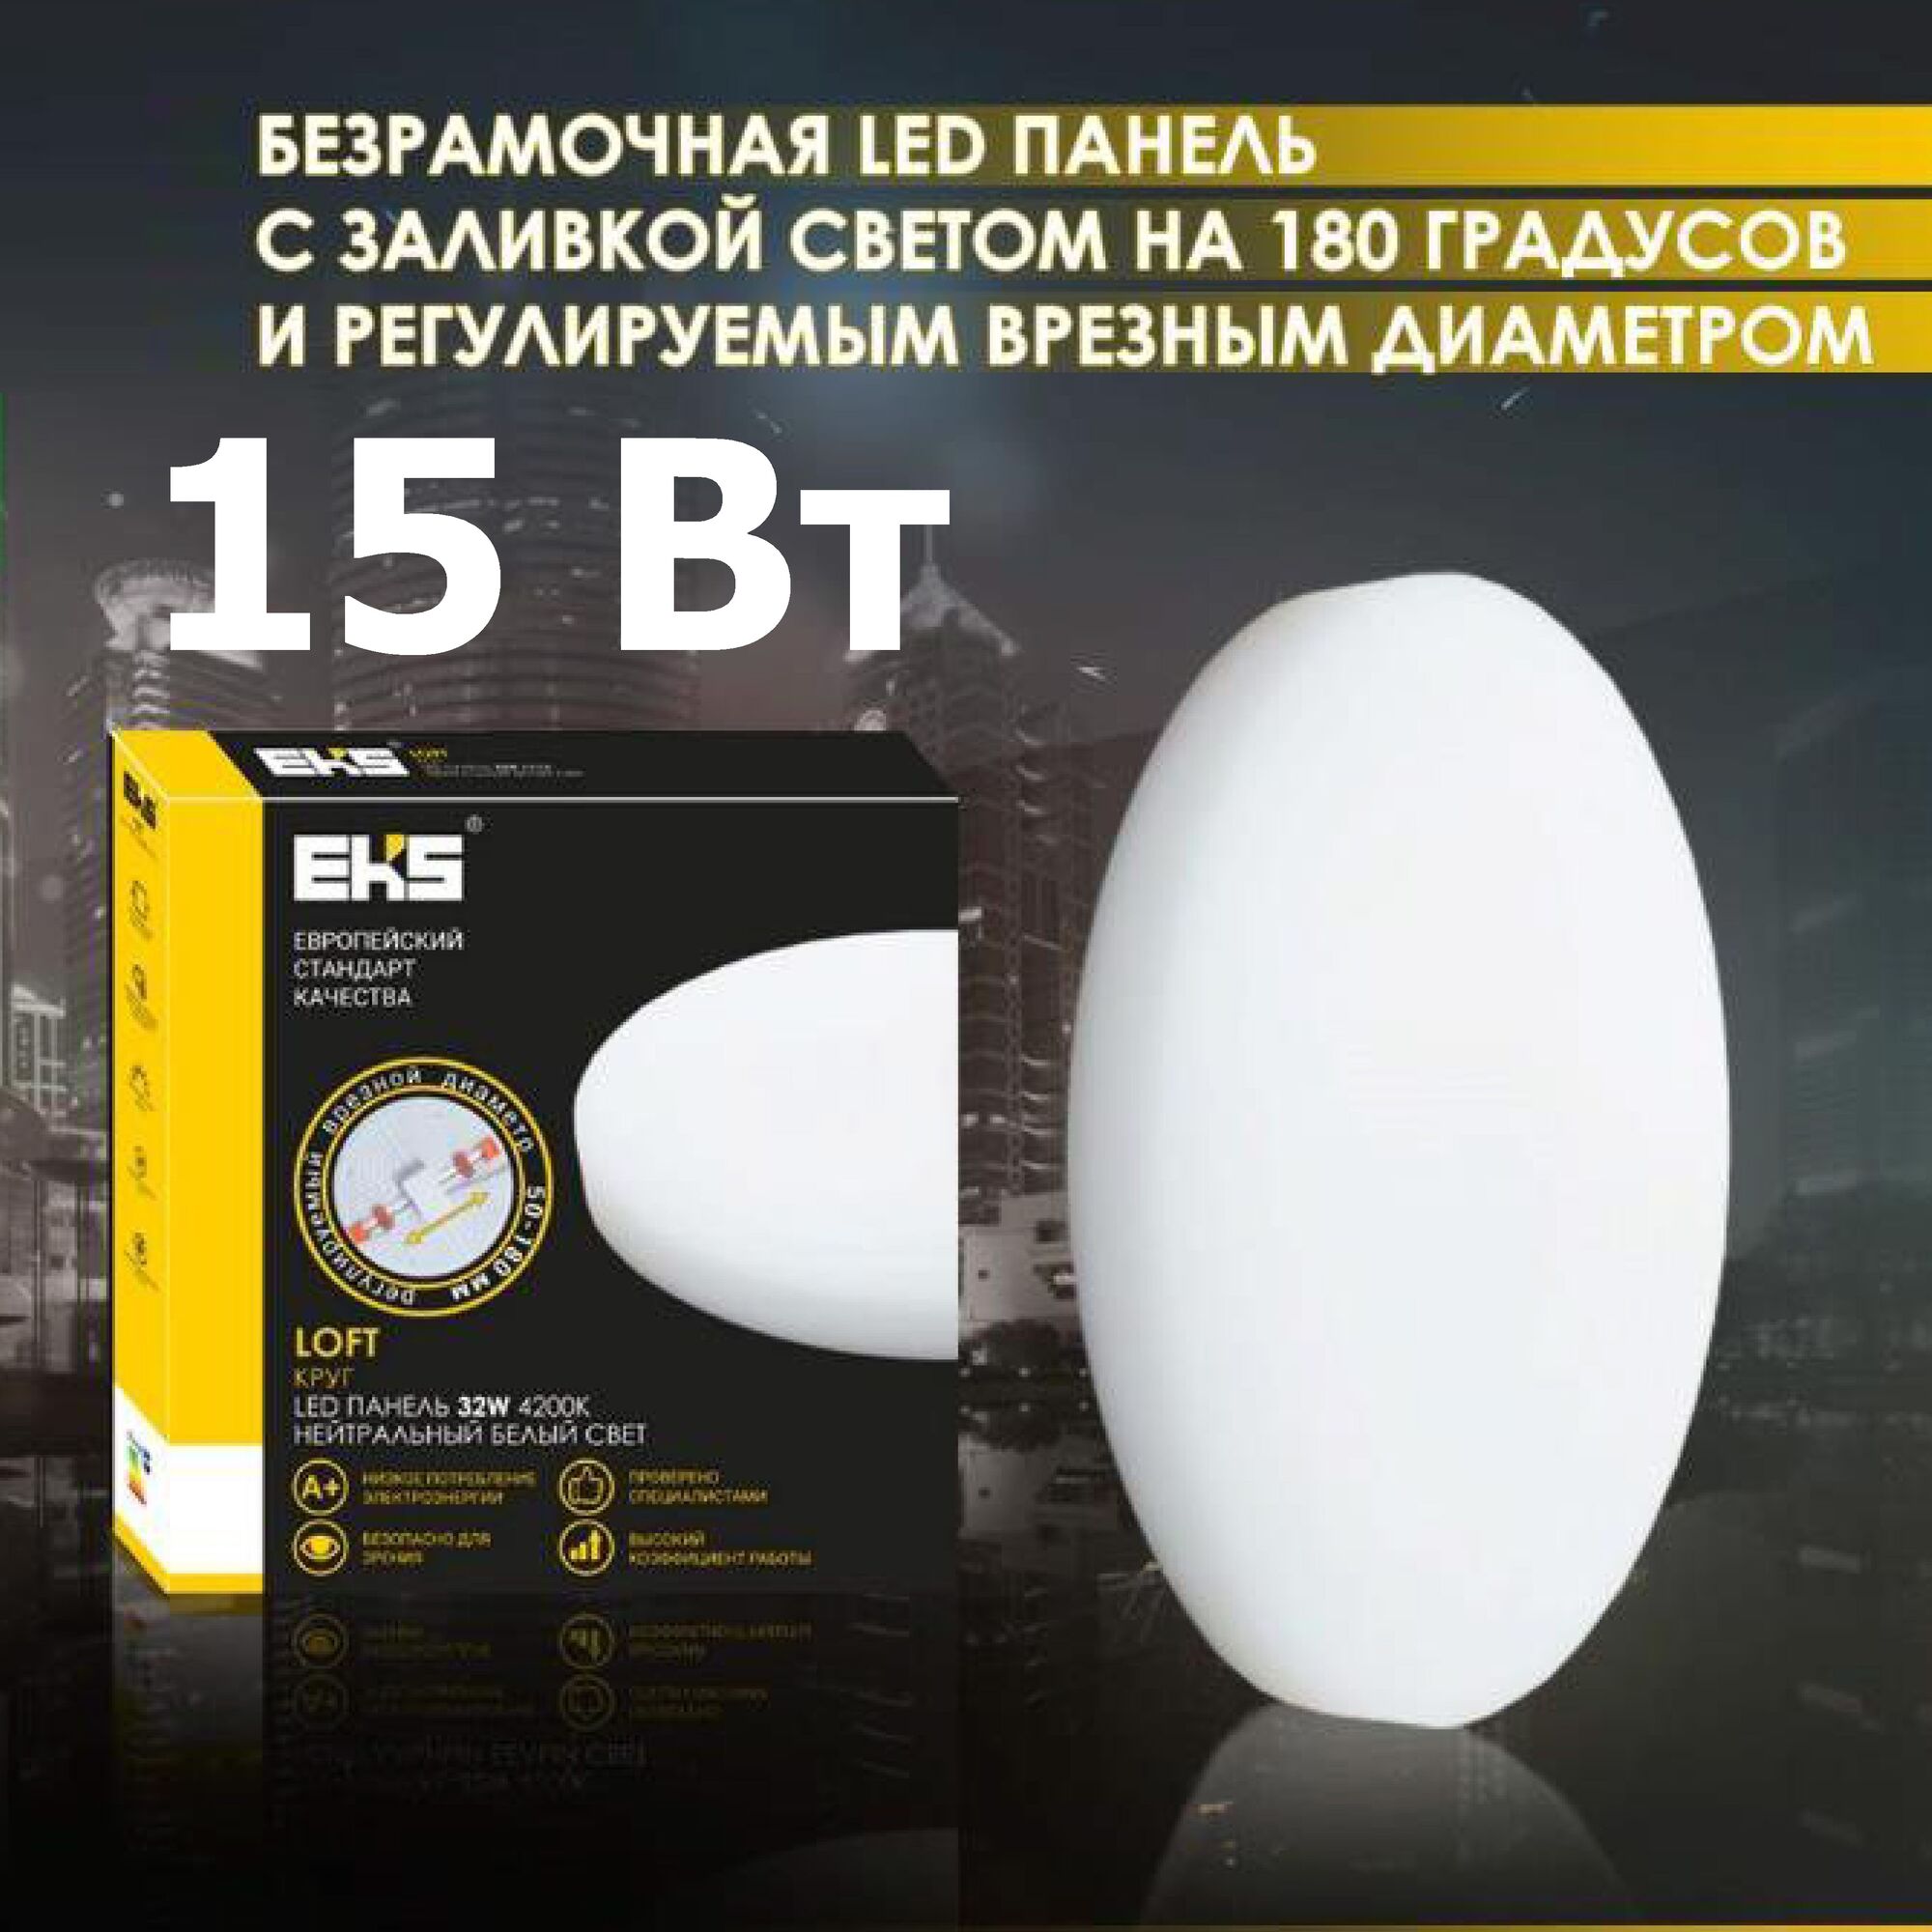 LED панель LOFT Круг , 15W, 4200K, 1300ЛМ, D120*50-80*40